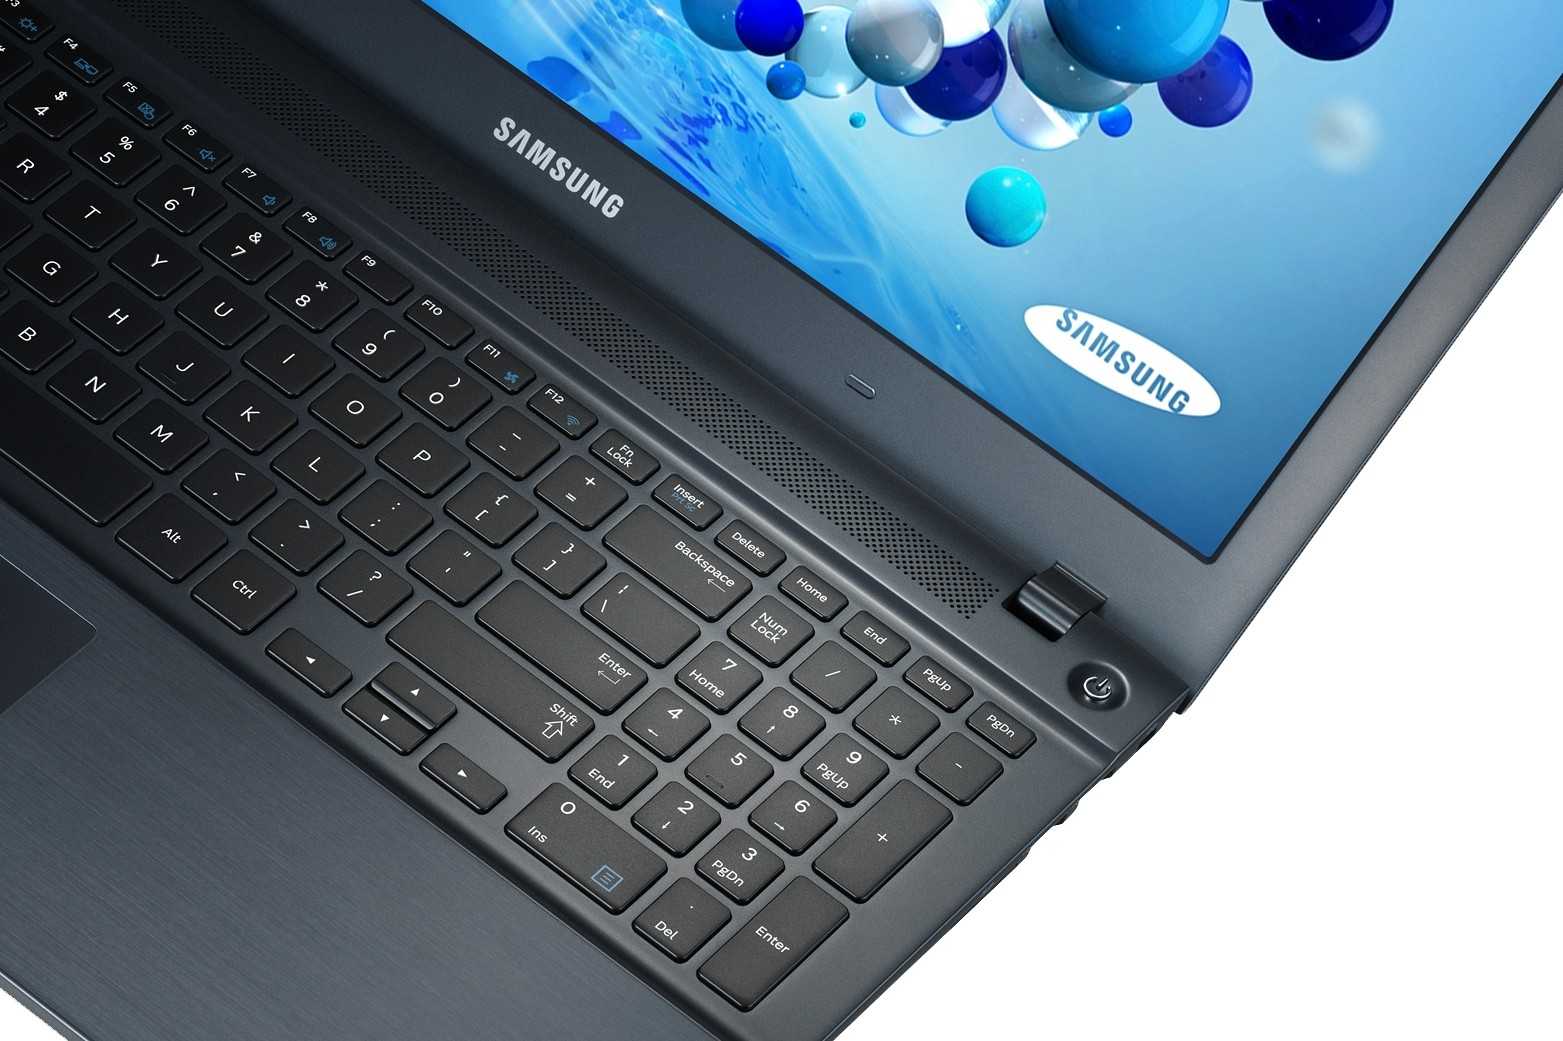 Ноутбук samsung 450r5e-x02 ativ book4 — купить, цена и характеристики, отзывы